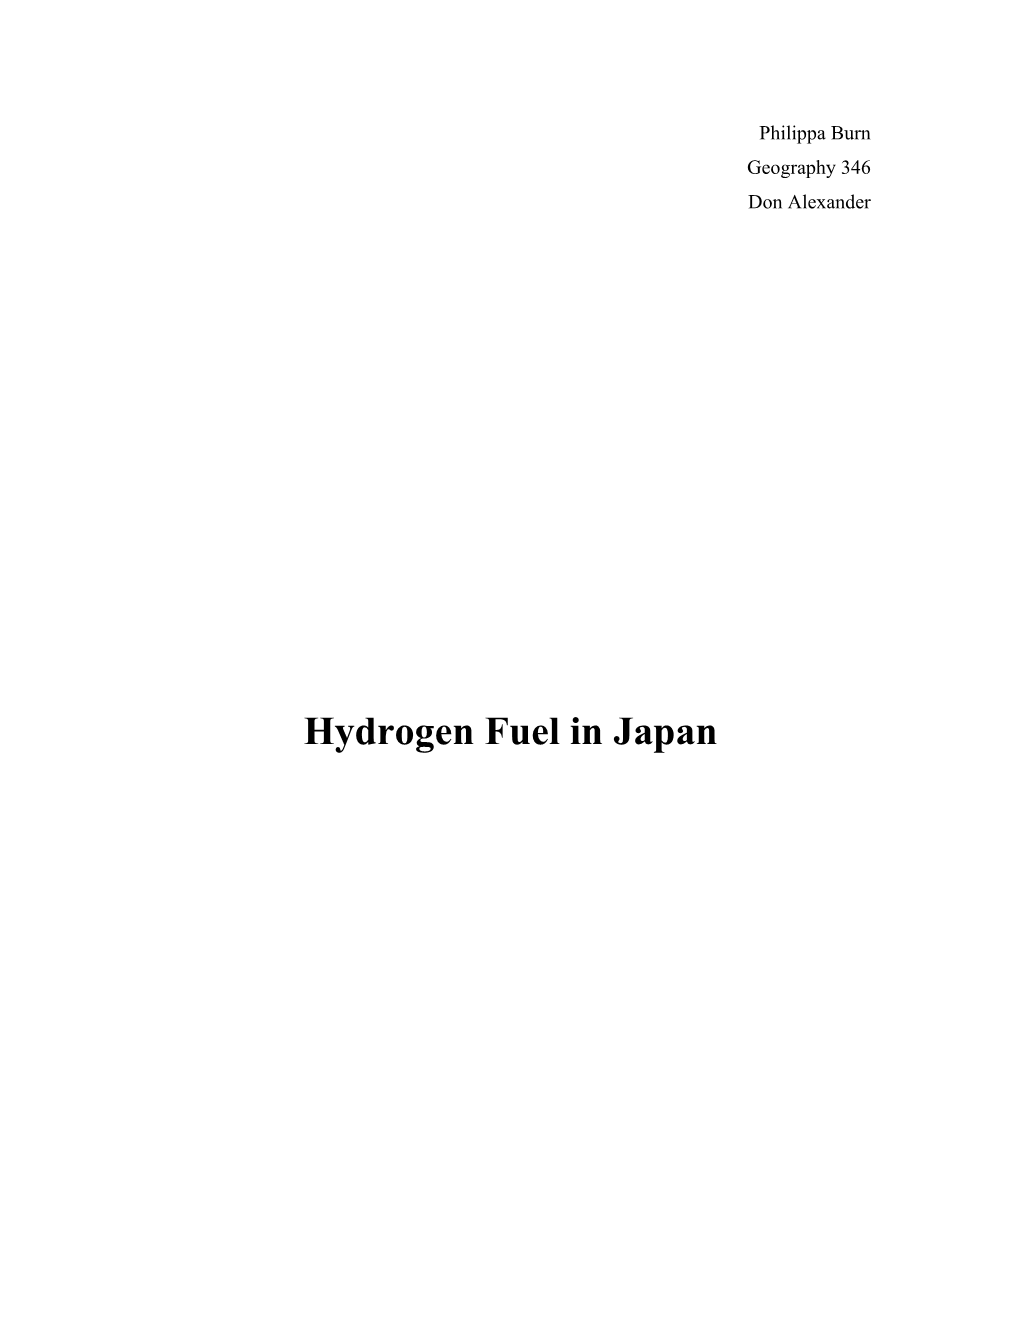 Hydrogen Fuel in Japan